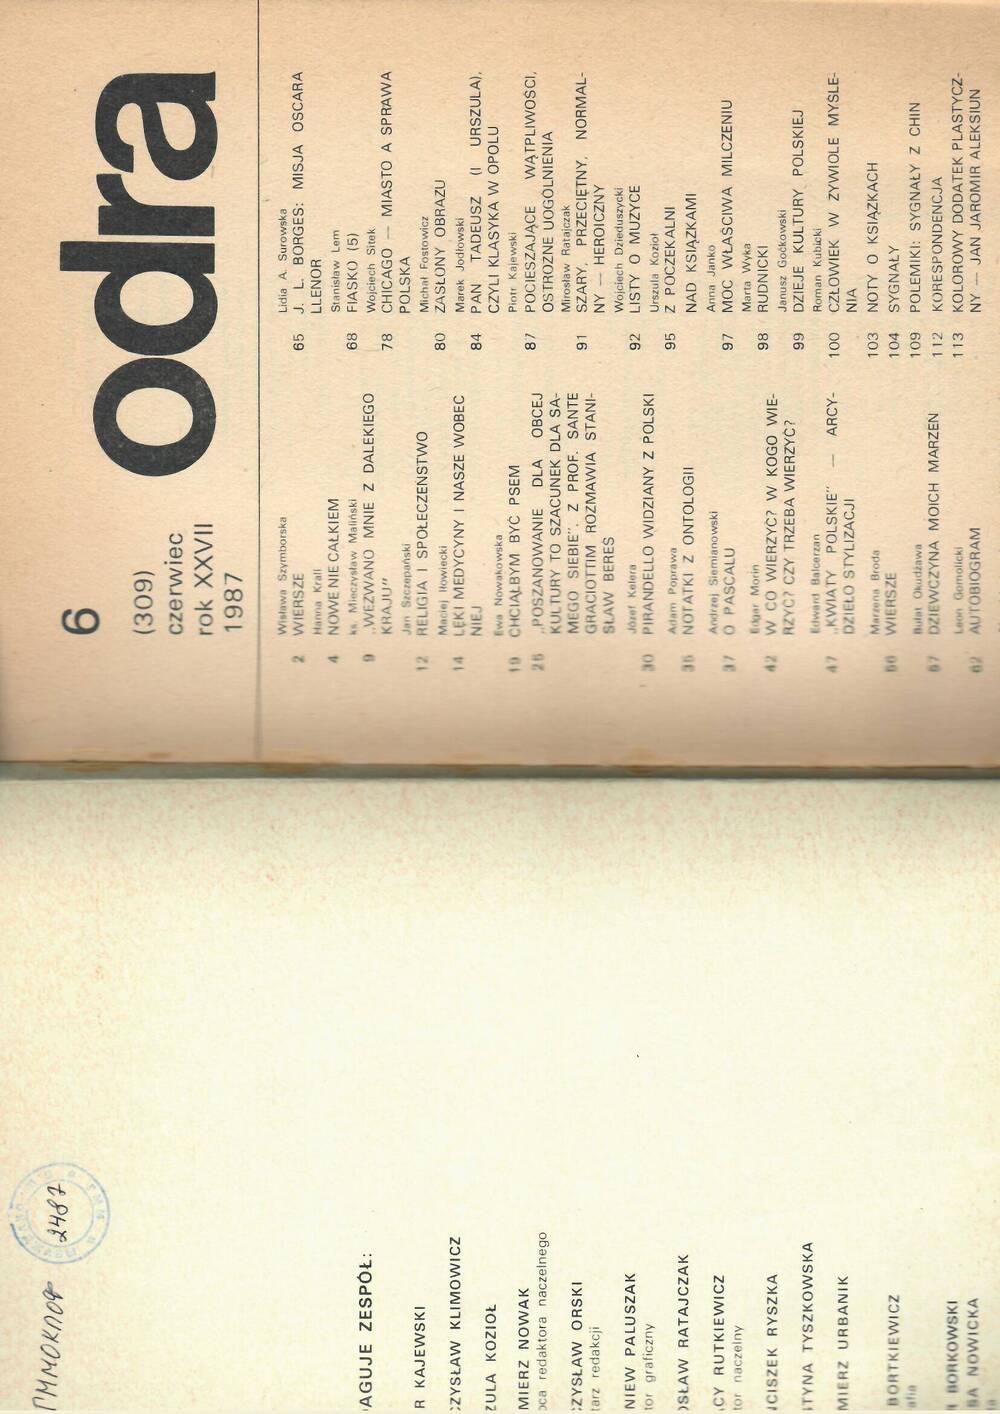 Журнал. Odra. miesięcznik społeczno-kulturalny (Ежемесячный социокультурный журнал) № 6 (июнь). 1987.